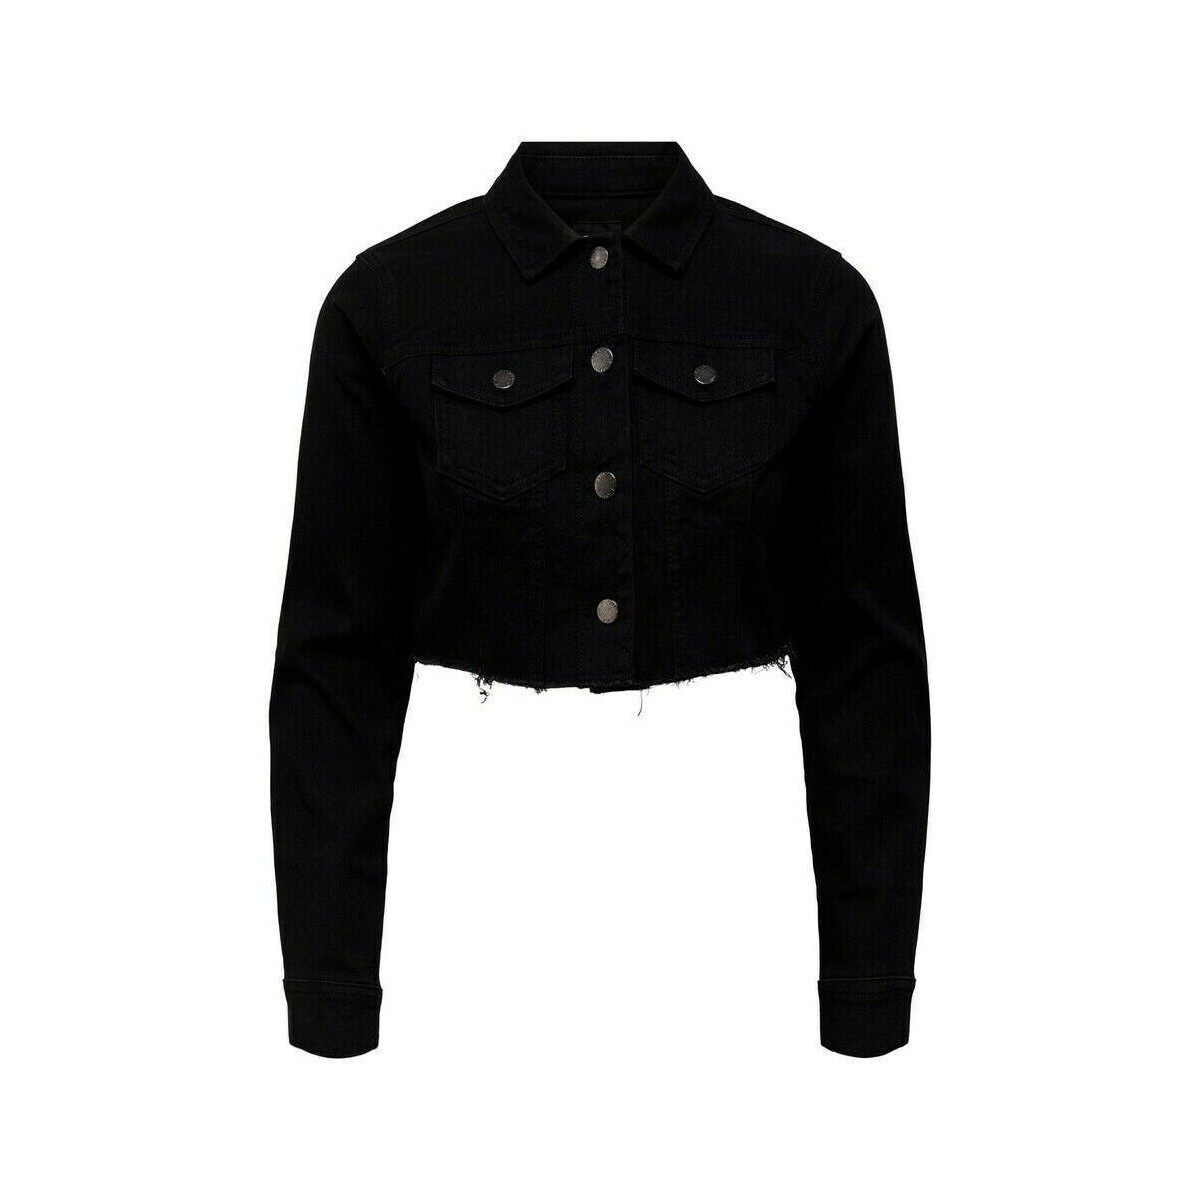 Kleidung Damen Jacken Only 15256098 WONDER-BLACK Schwarz